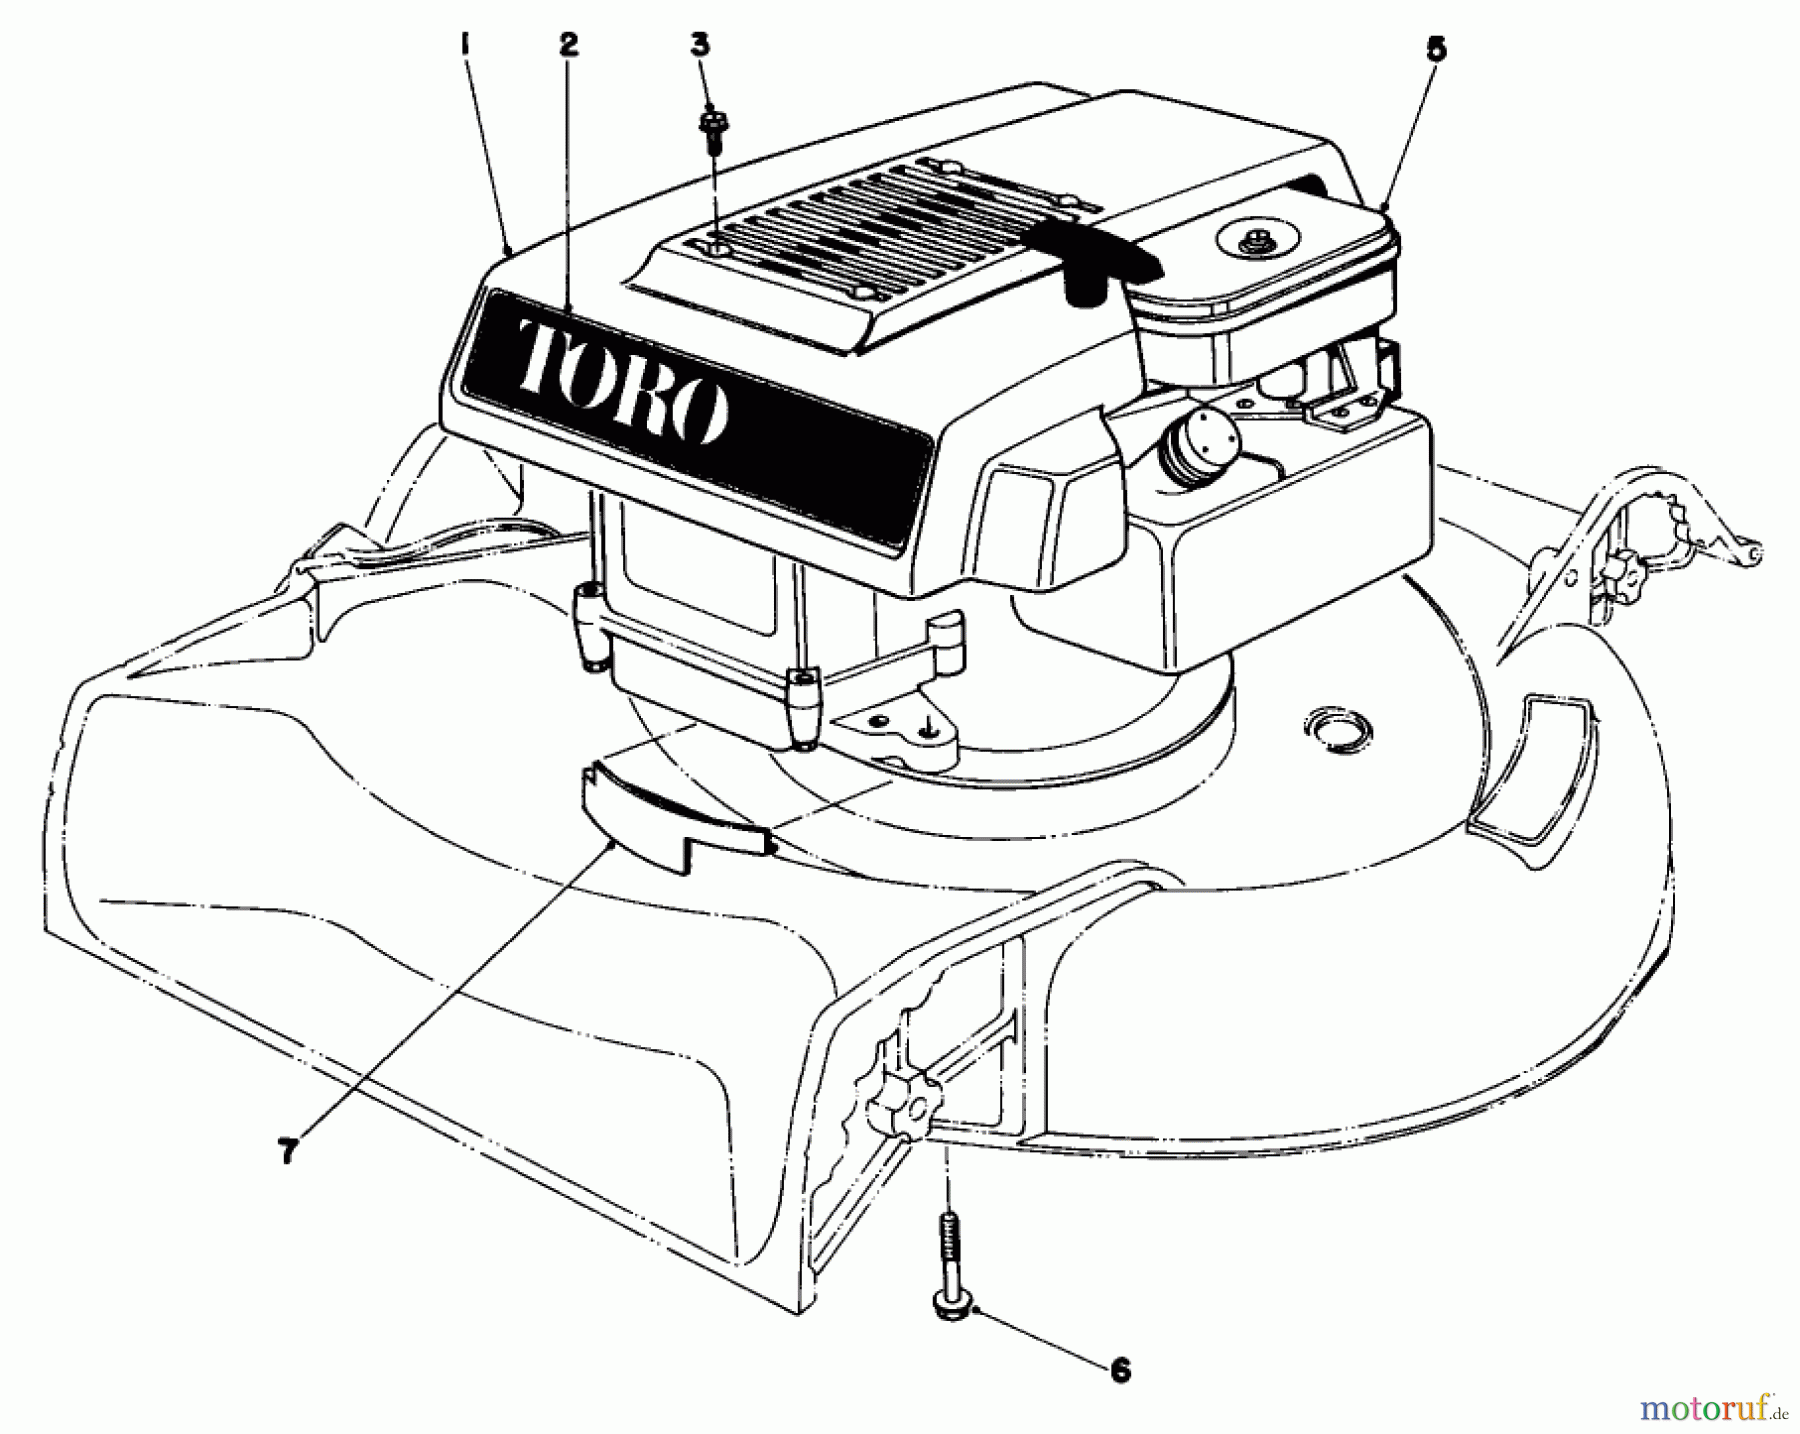  Toro Neu Mowers, Walk-Behind Seite 1 16113 - Toro Whirlwind II Lawnmower, 1979 (9000001-9999999) ENGINE ASSEMBLY MODEL 16009 AND 16113